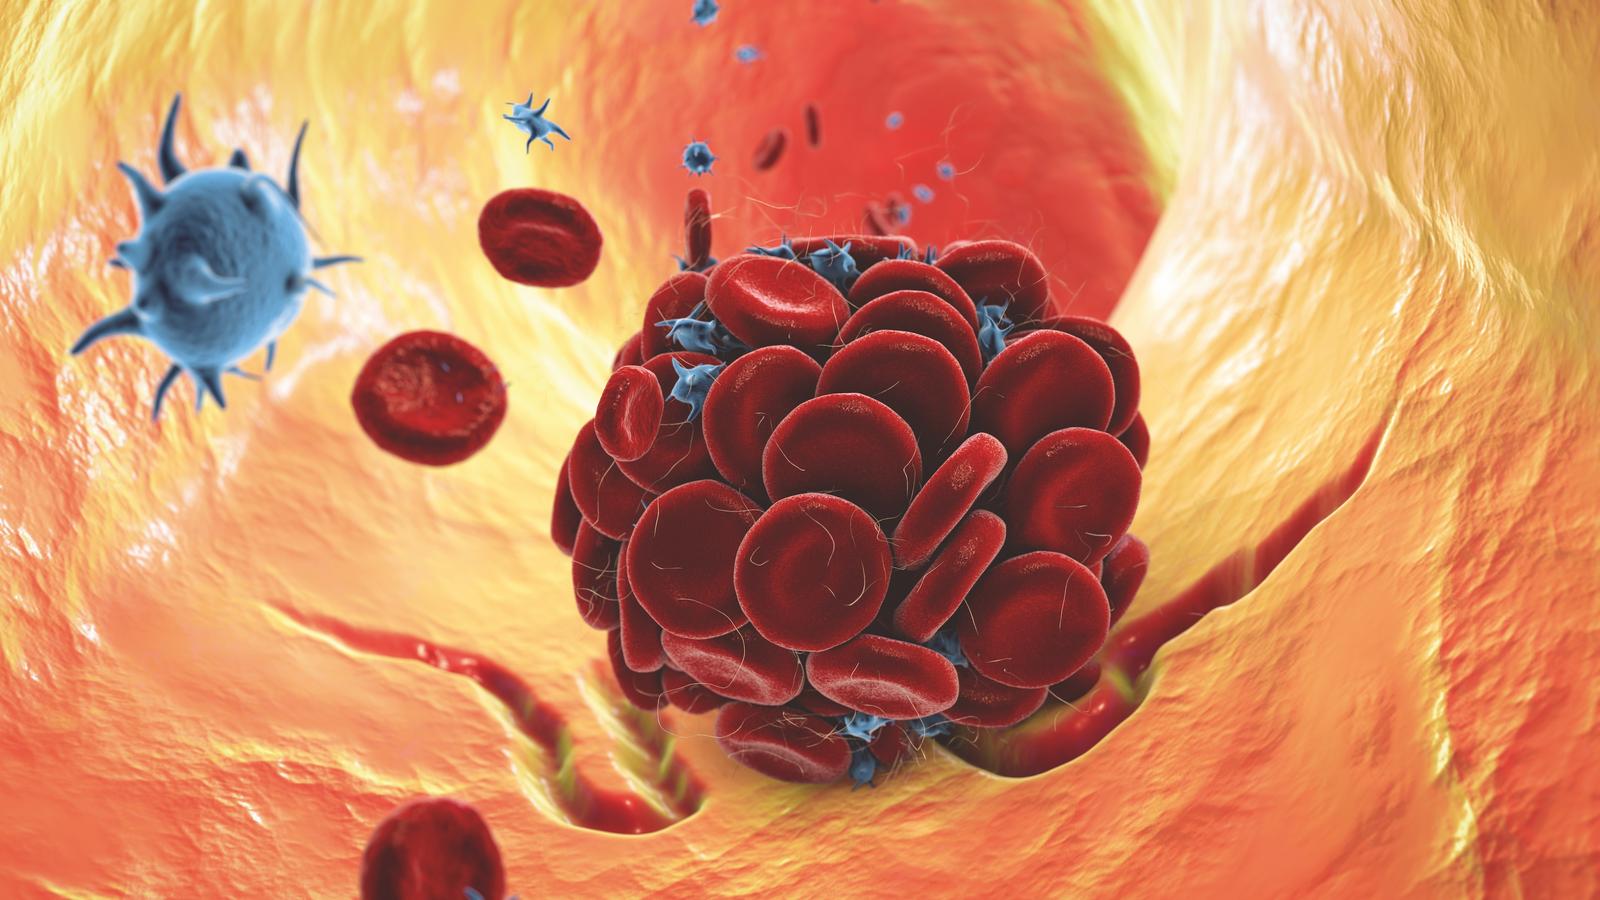 Thromboseplättchen lösen sich in BLutbahn